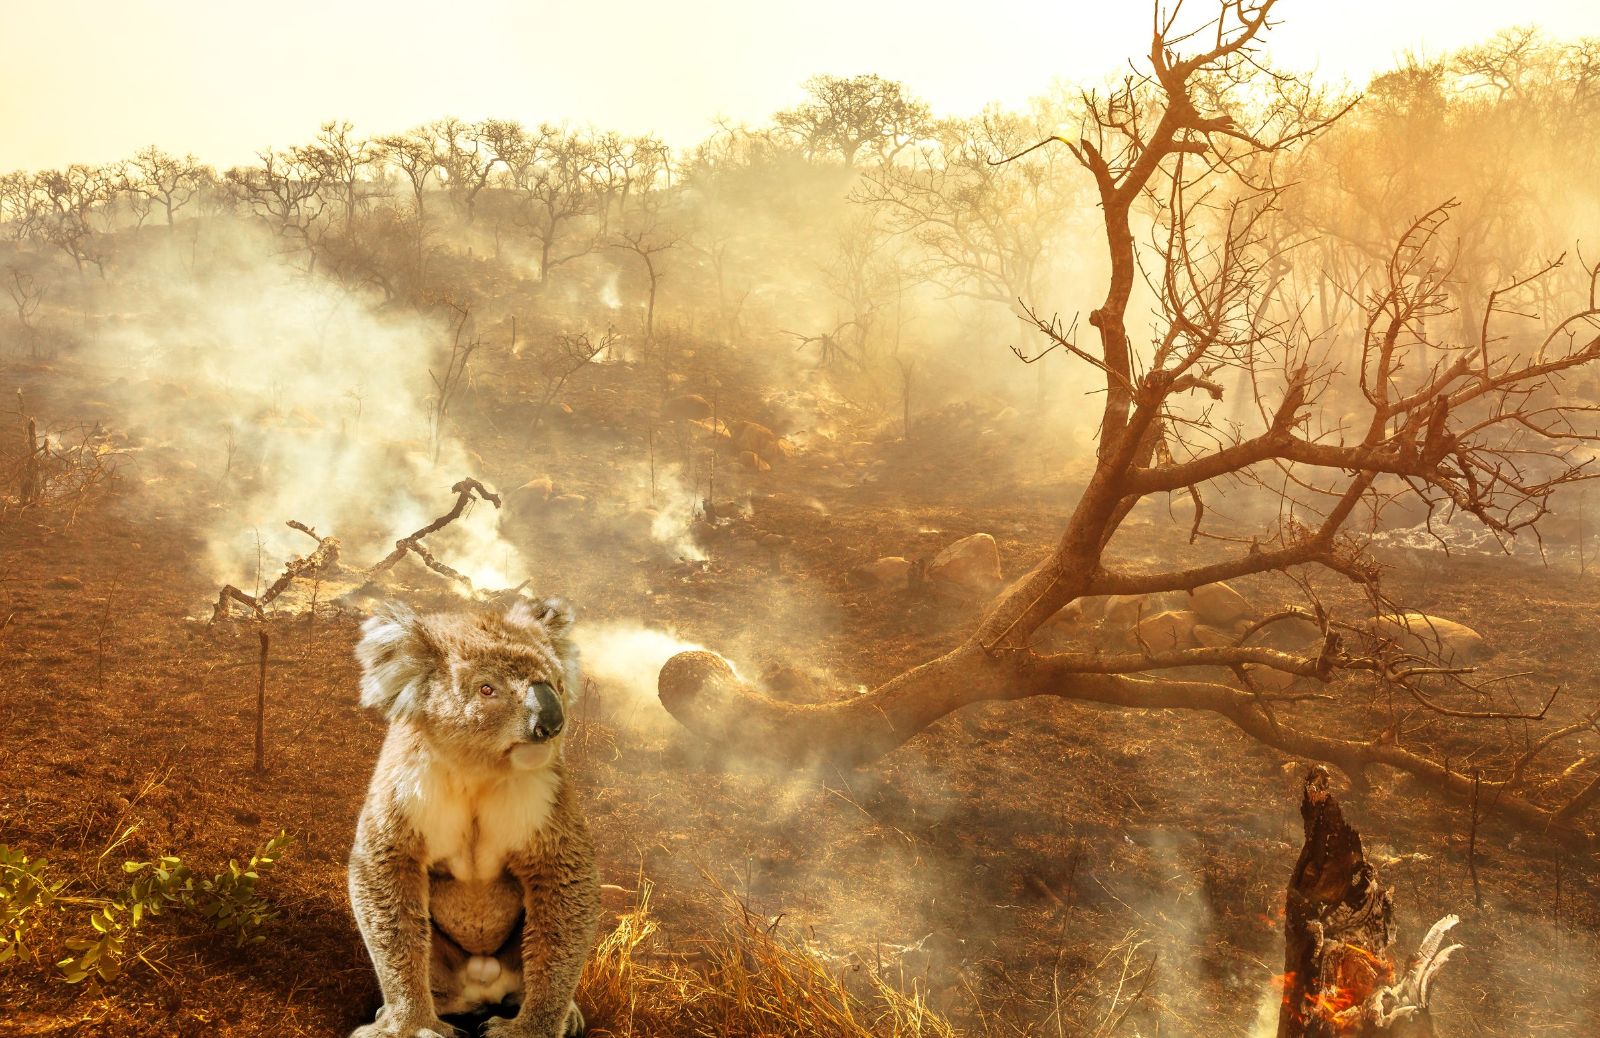 Animali australiani: quanti ne sono morti negli incendi